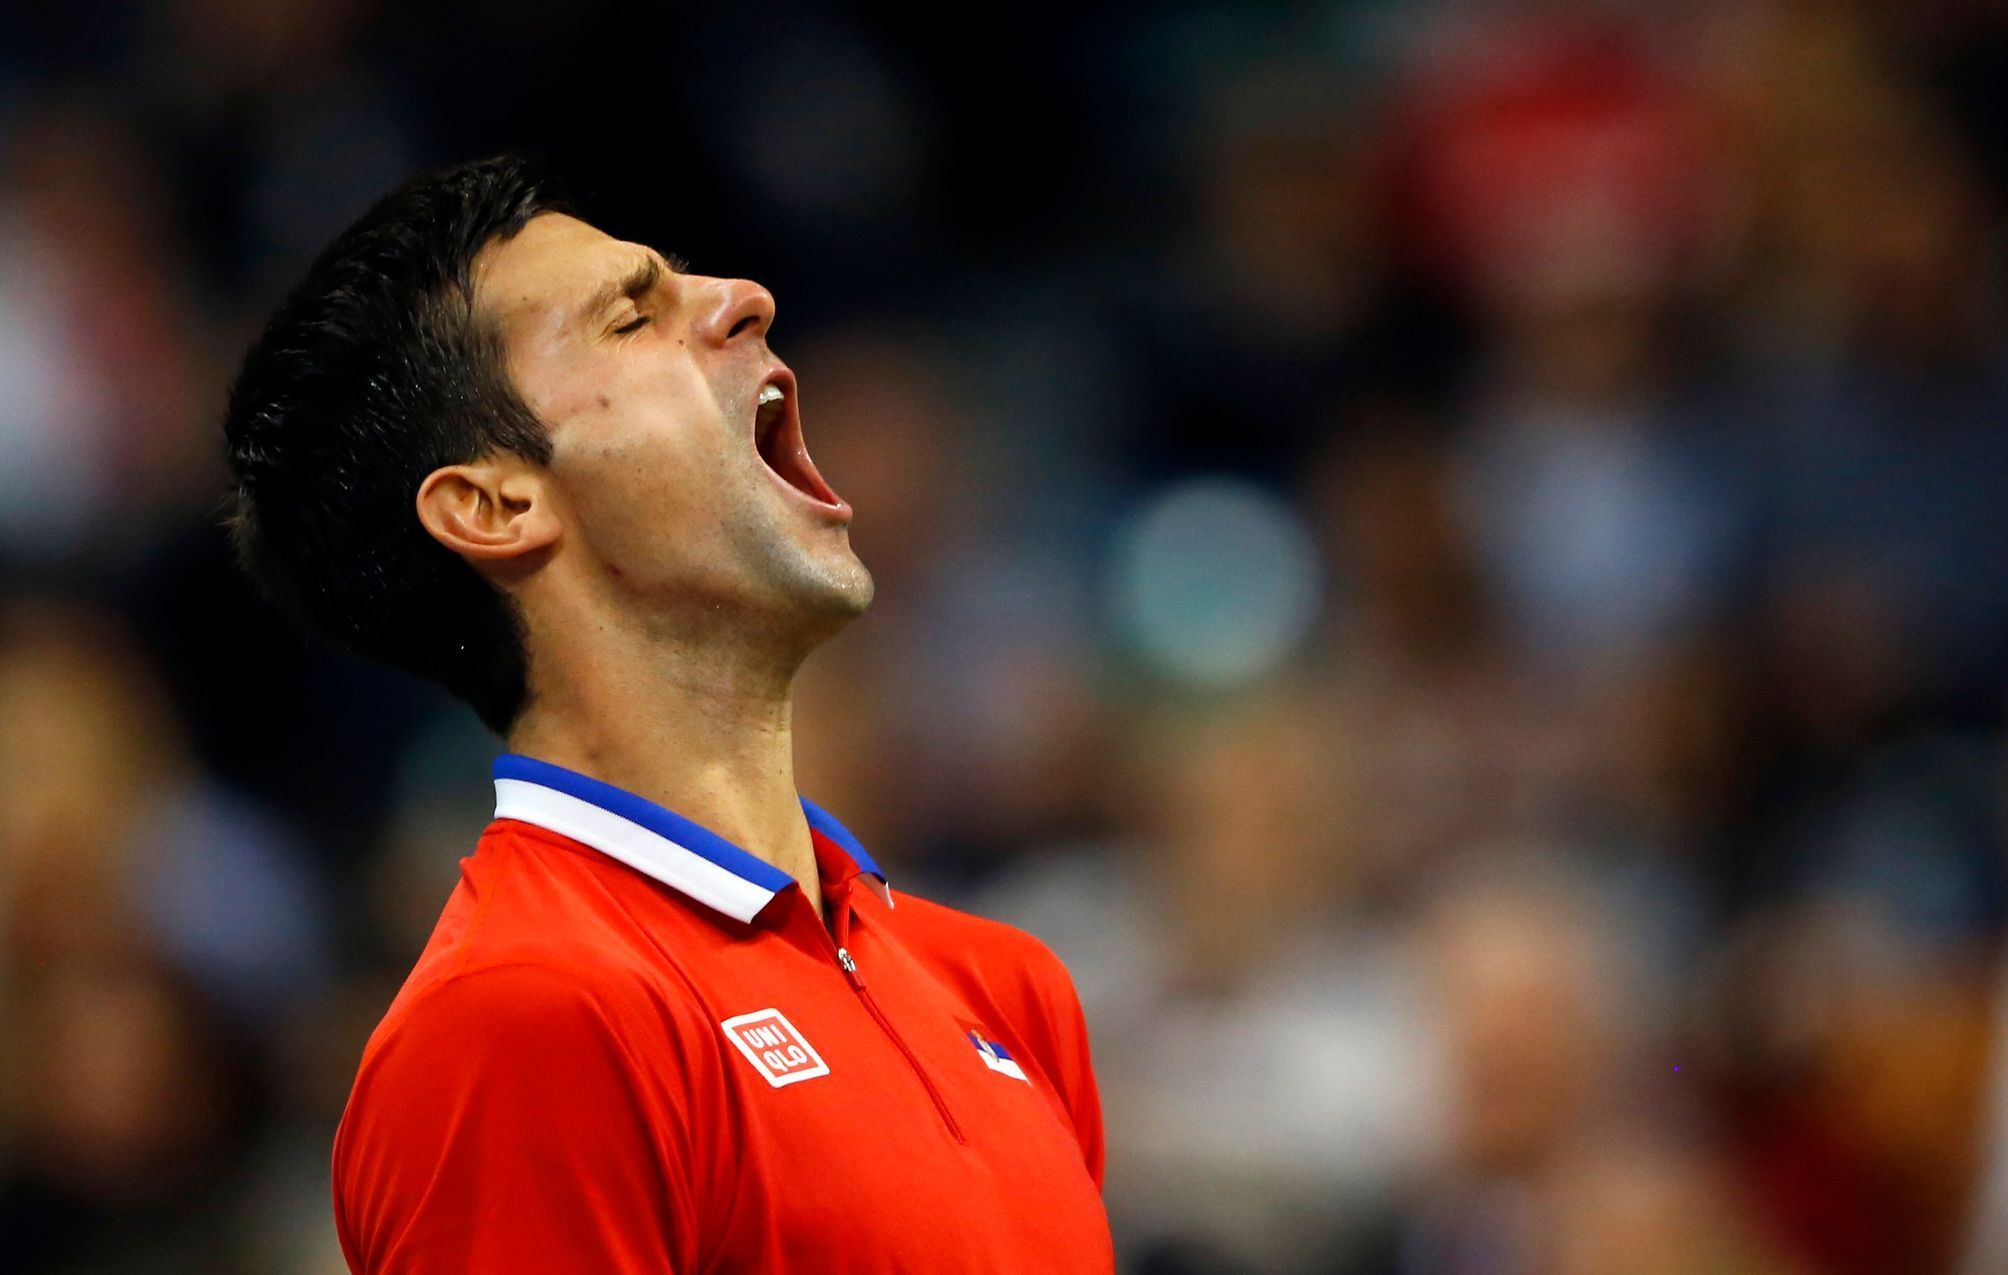 Novak Djokovič ve finále Davisova poháru v utkání proti Štěpánkovi